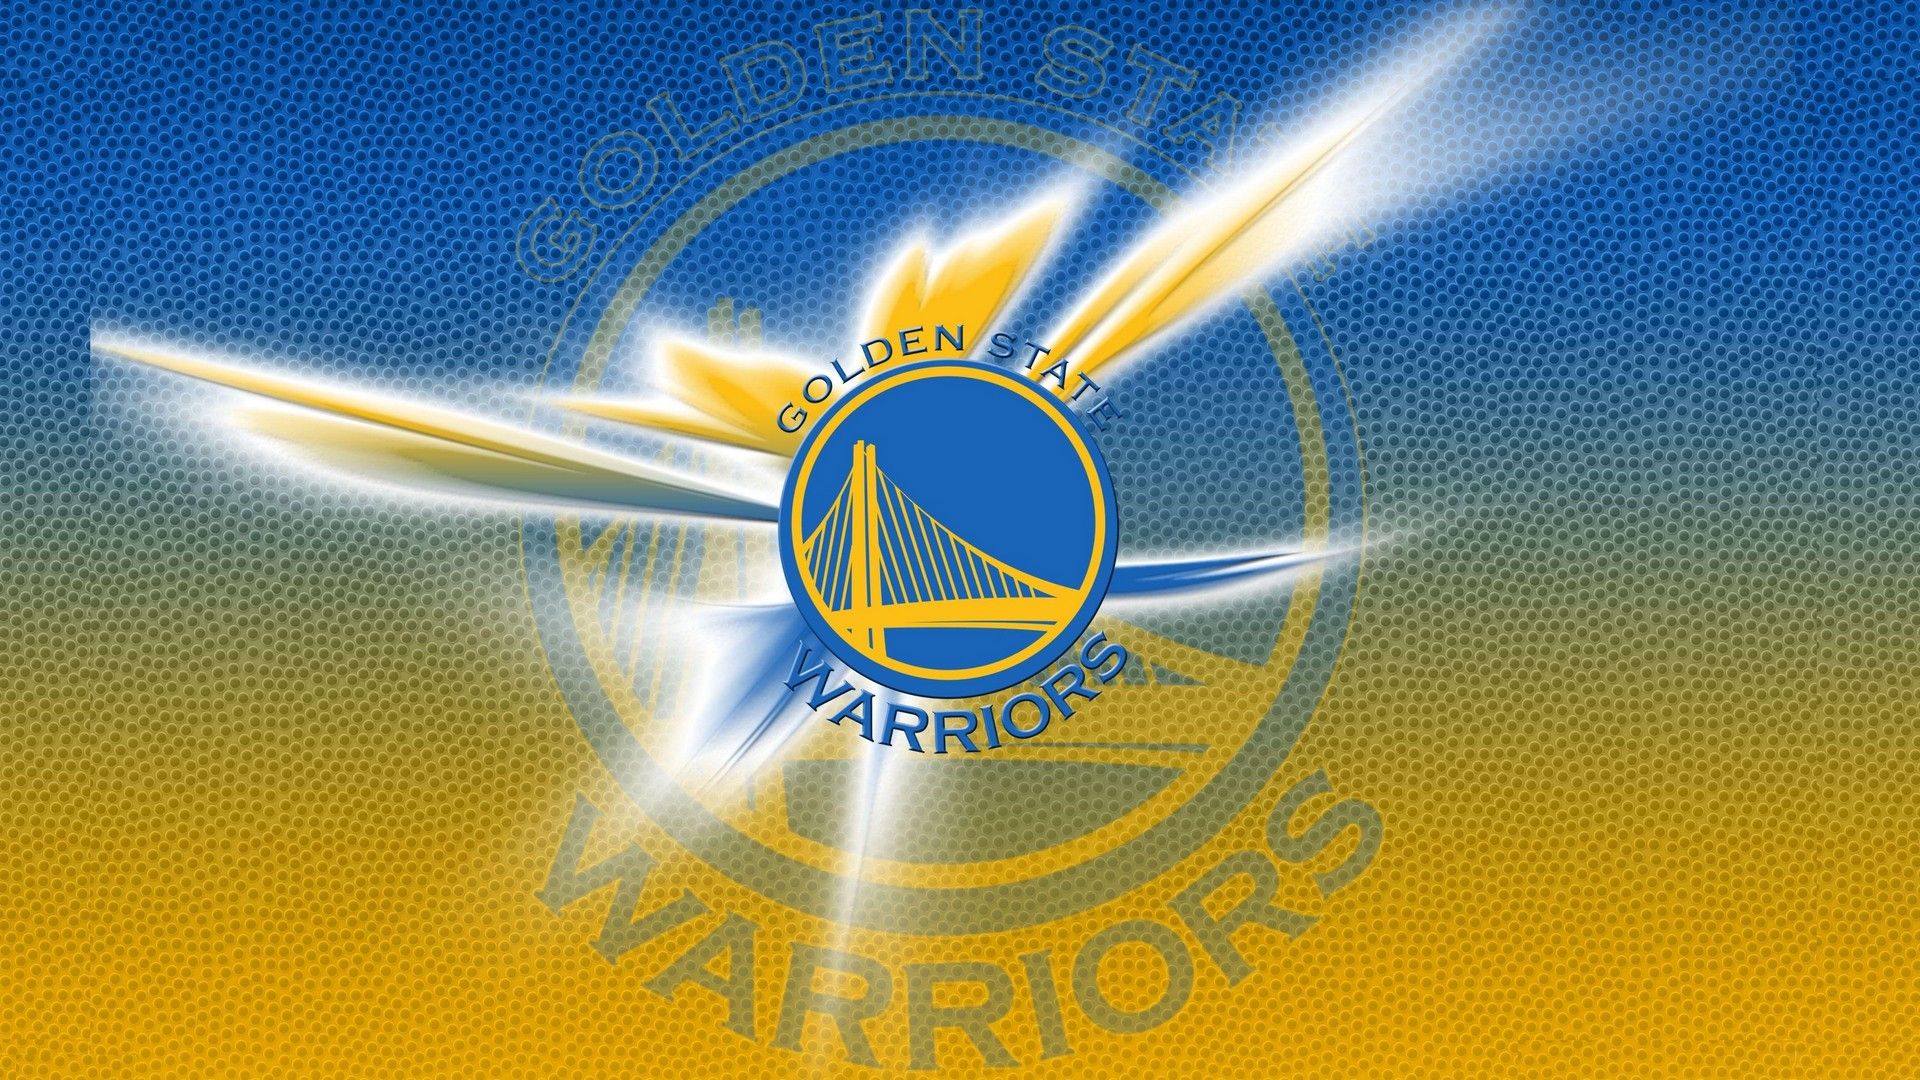 HD Golden State Warriors Wallpaper Basketball Wallpaper. Golden state warriors wallpaper, Golden state warriors logo, Golden state warriors